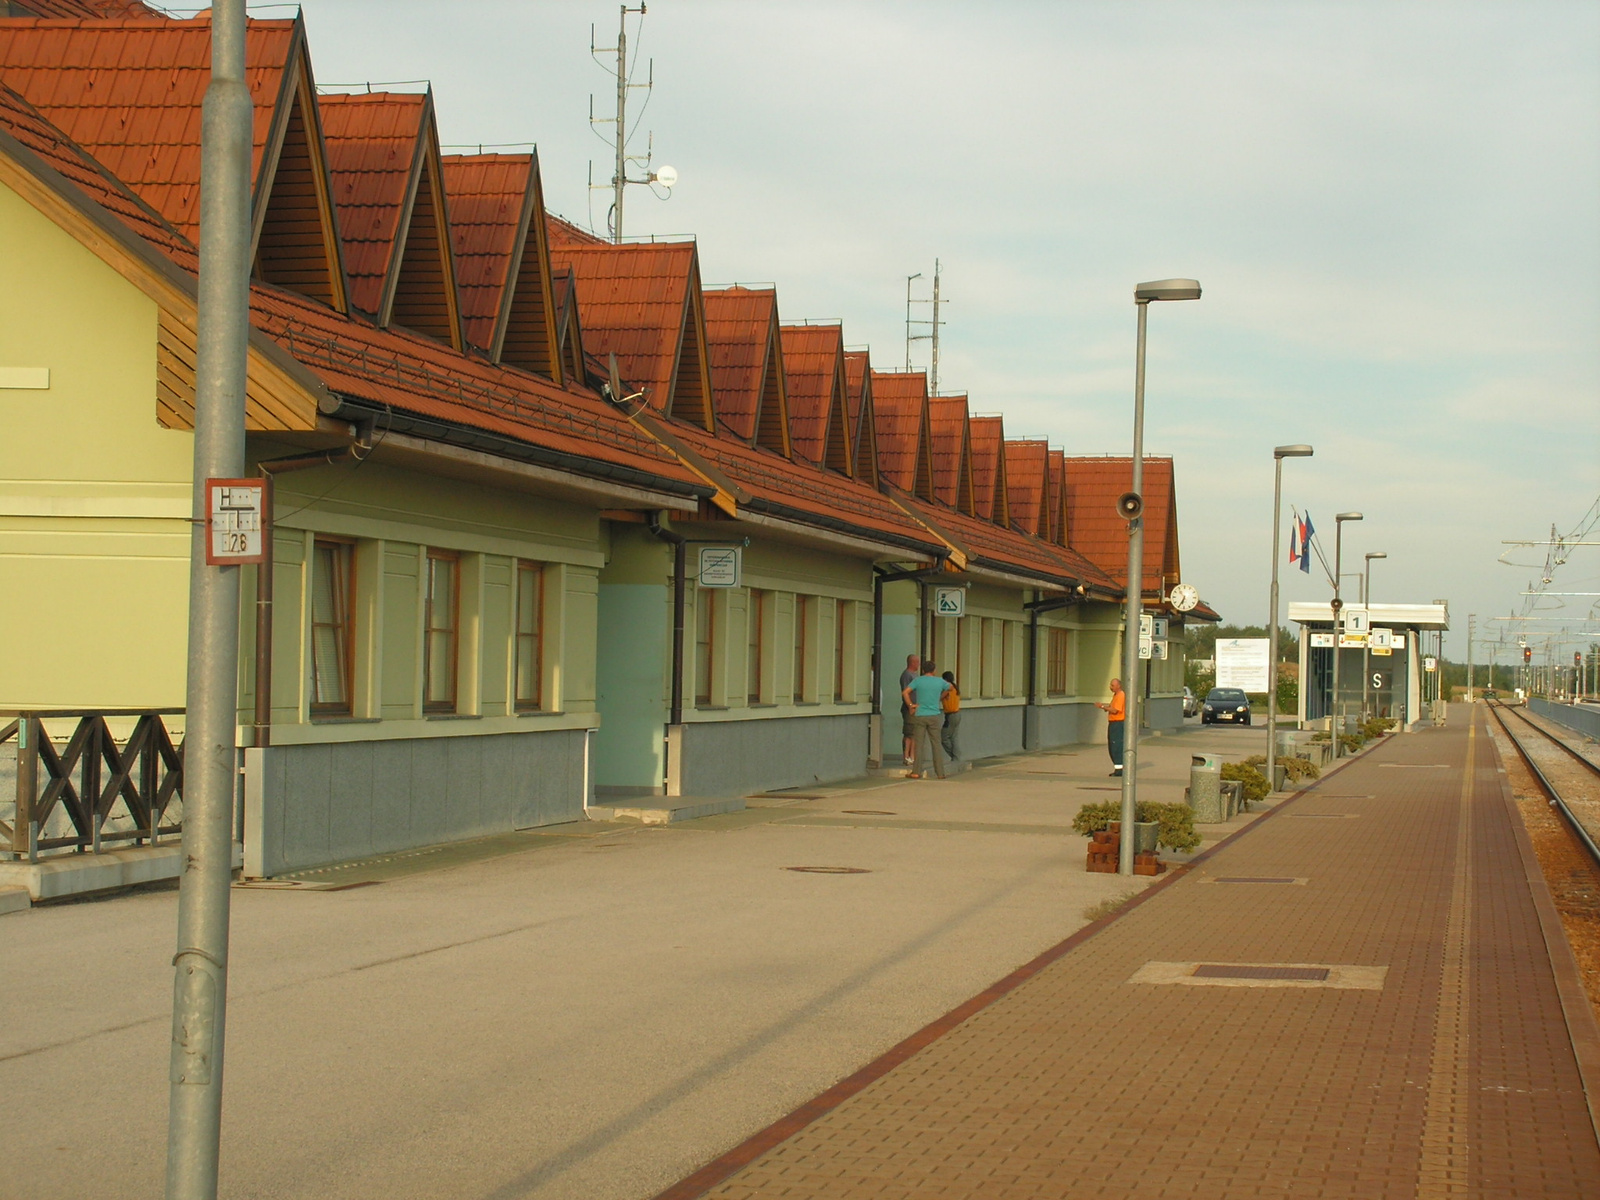 Szlovénia, Hodoš (Őrihódos), vasútállomás, SzG3